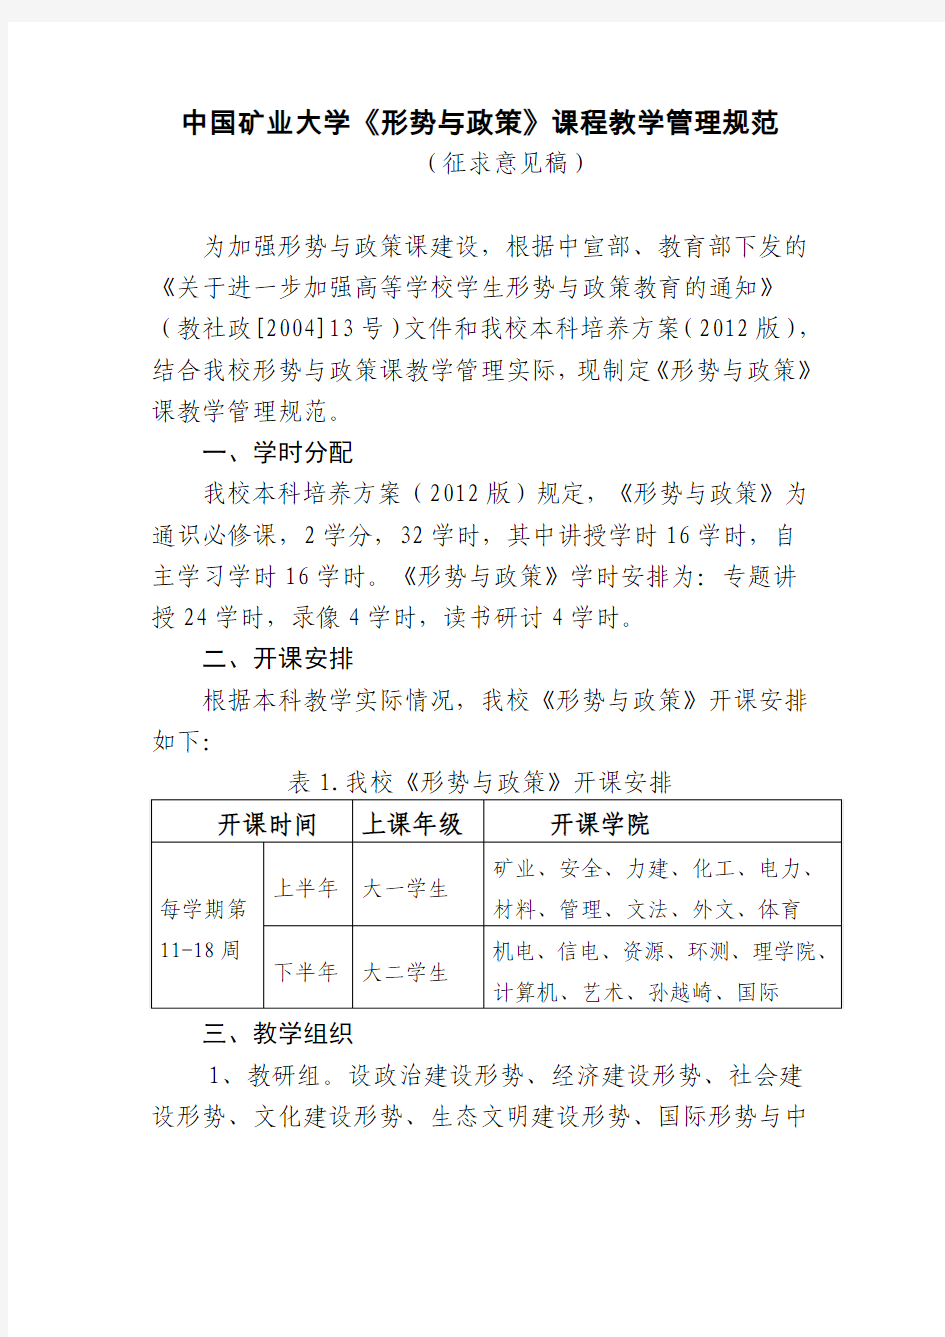 中国矿业大学《形势与政策》课程教学管理规范